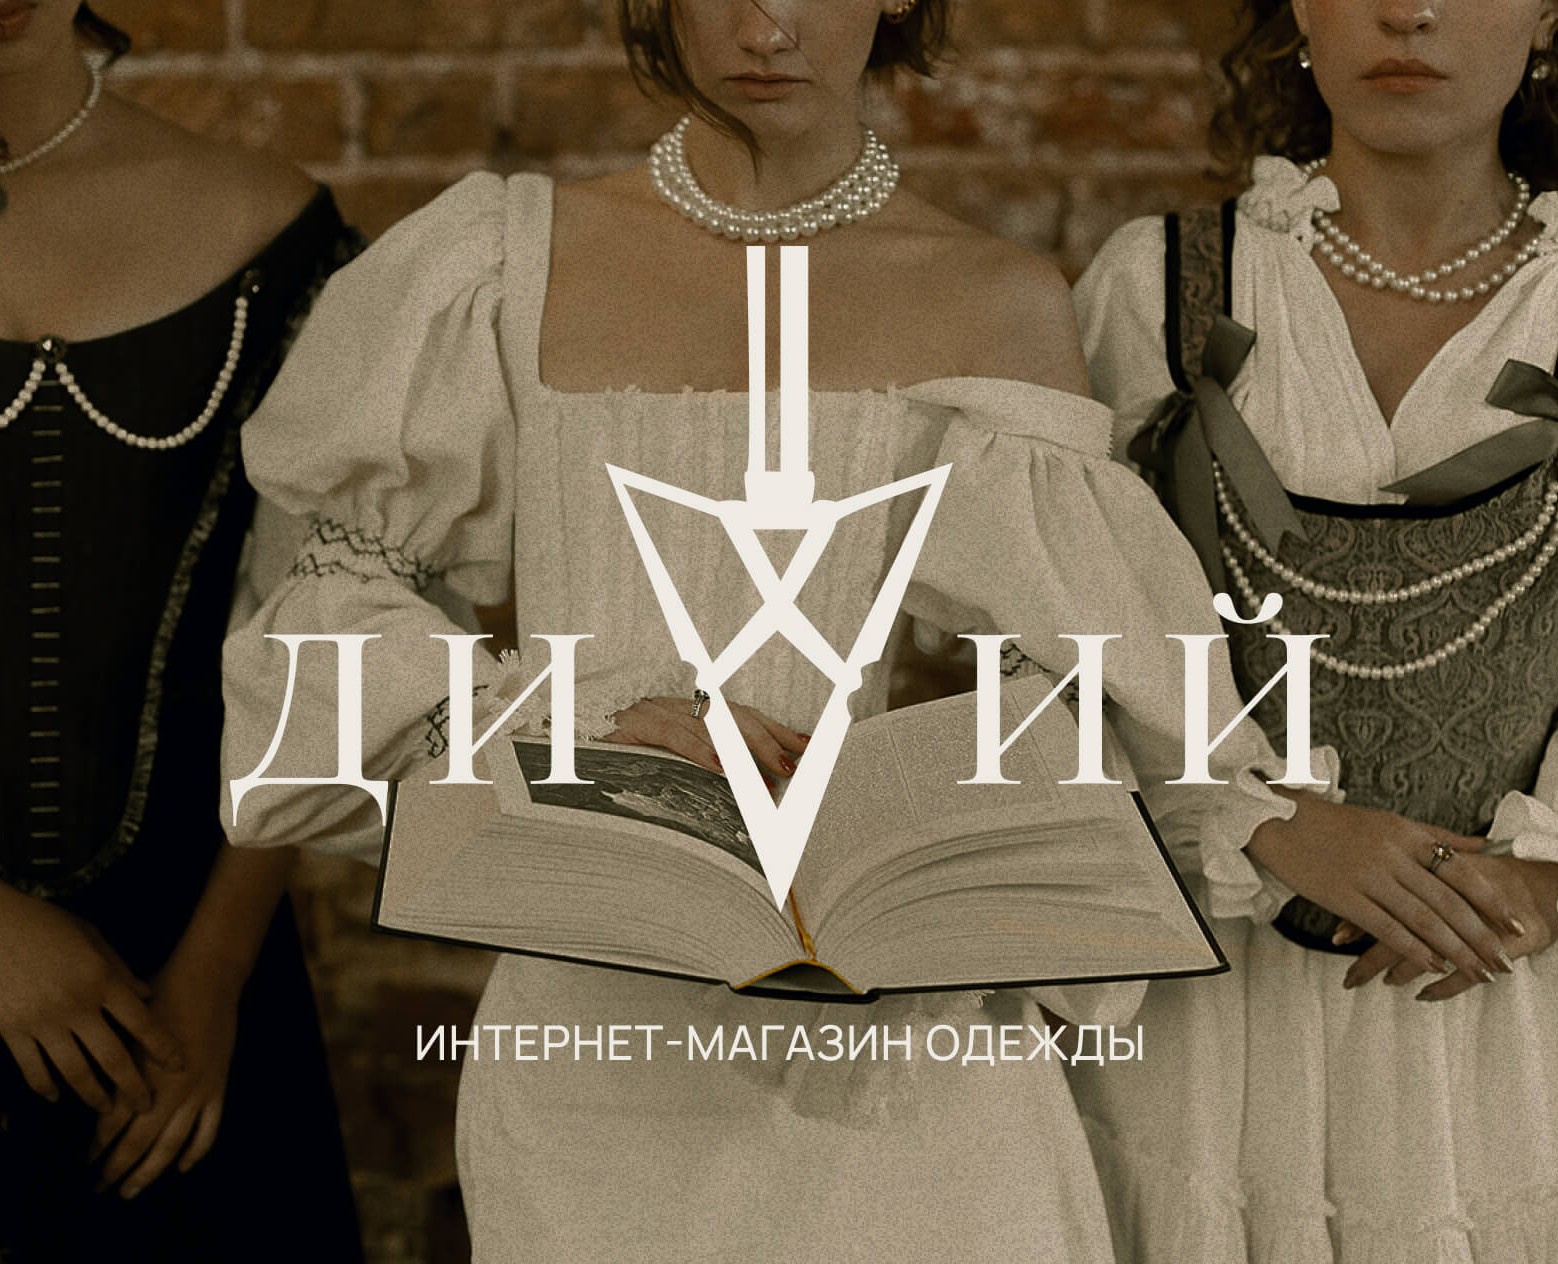 ДИВИЙ | интернет-магазин одежды — Интерфейсы, Анимация на Dprofile